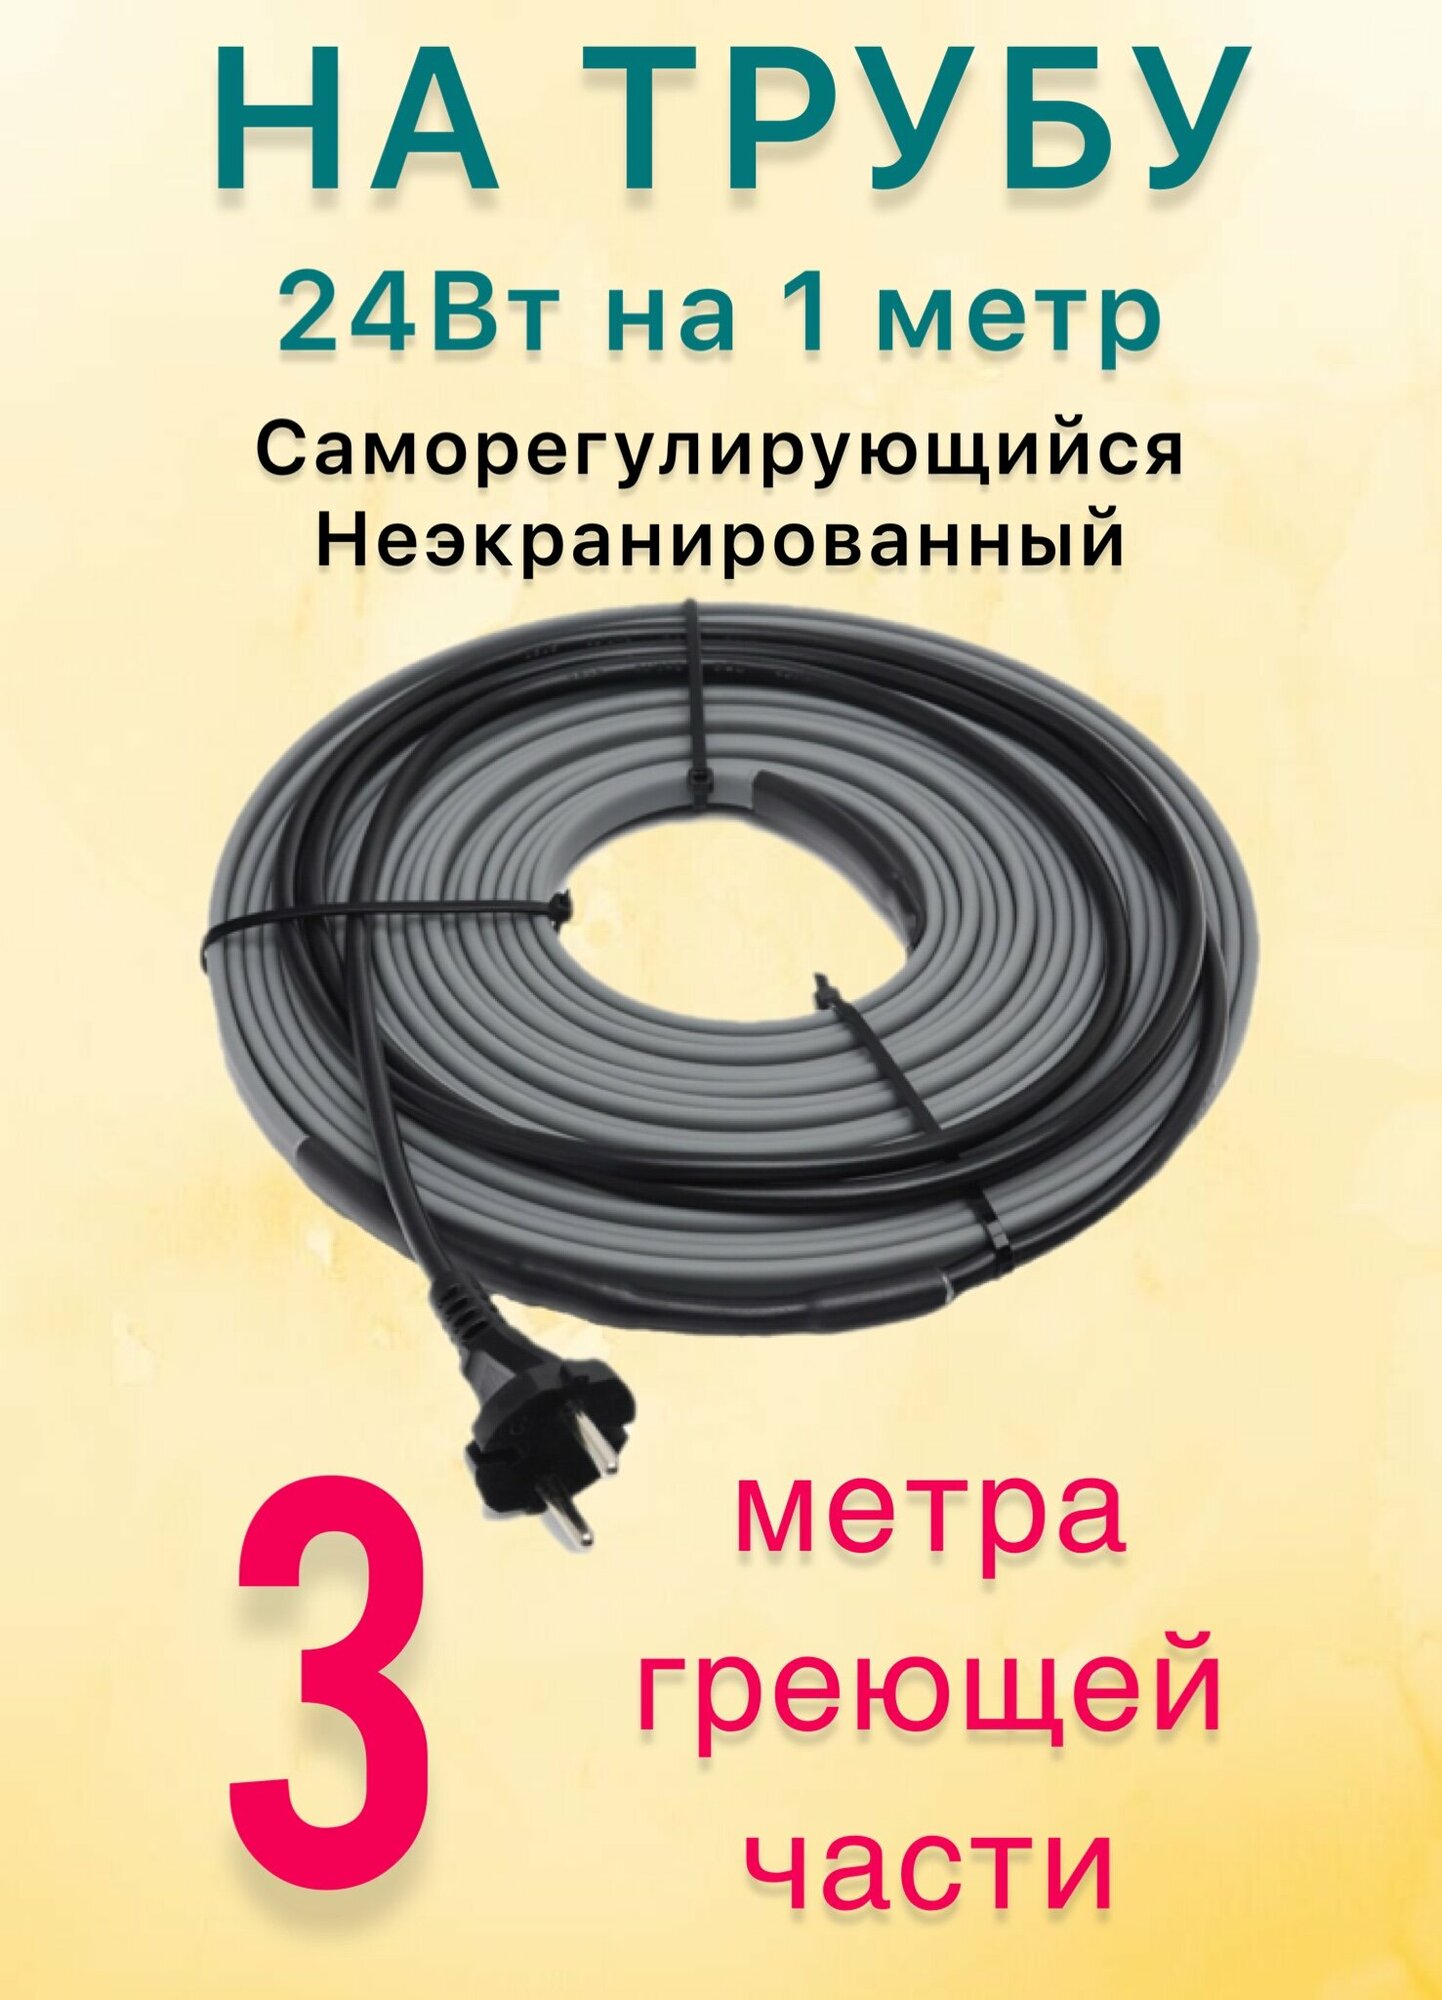 Греющий саморегулирующий кабель для обогрева труб VSRL24-2 (3м) / 72 Вт